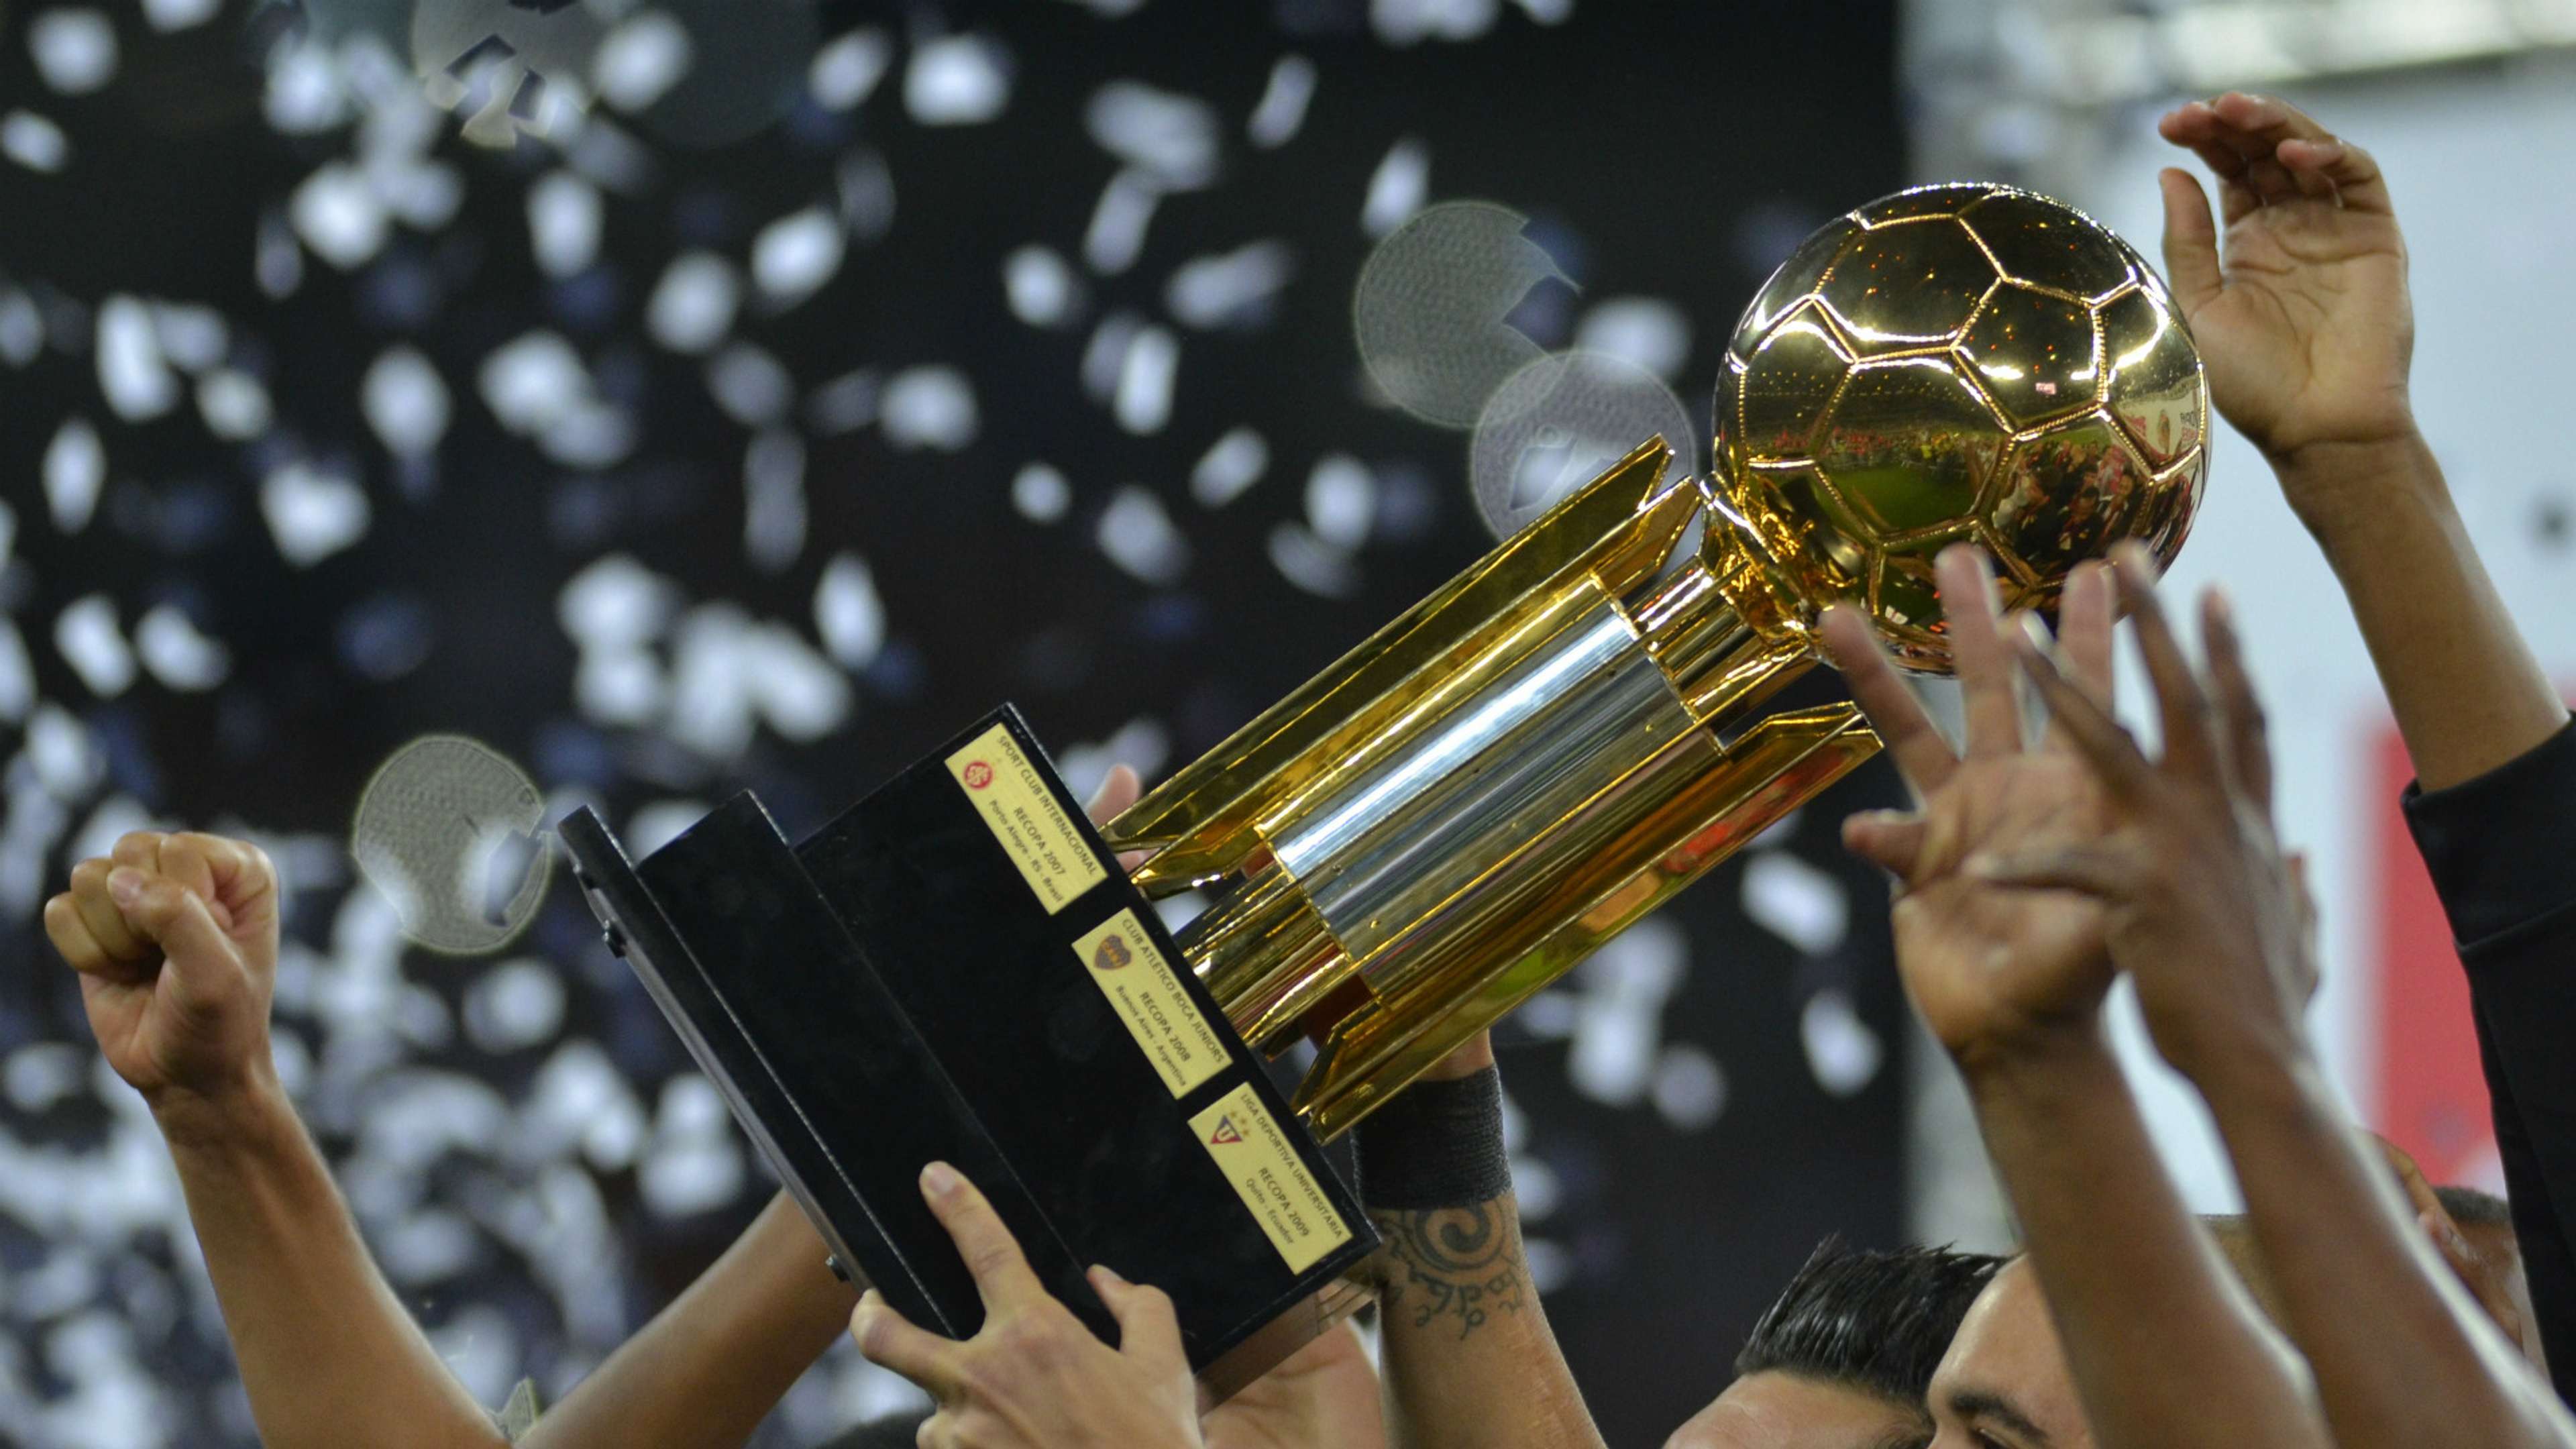 Recopa Sudamericana trophy